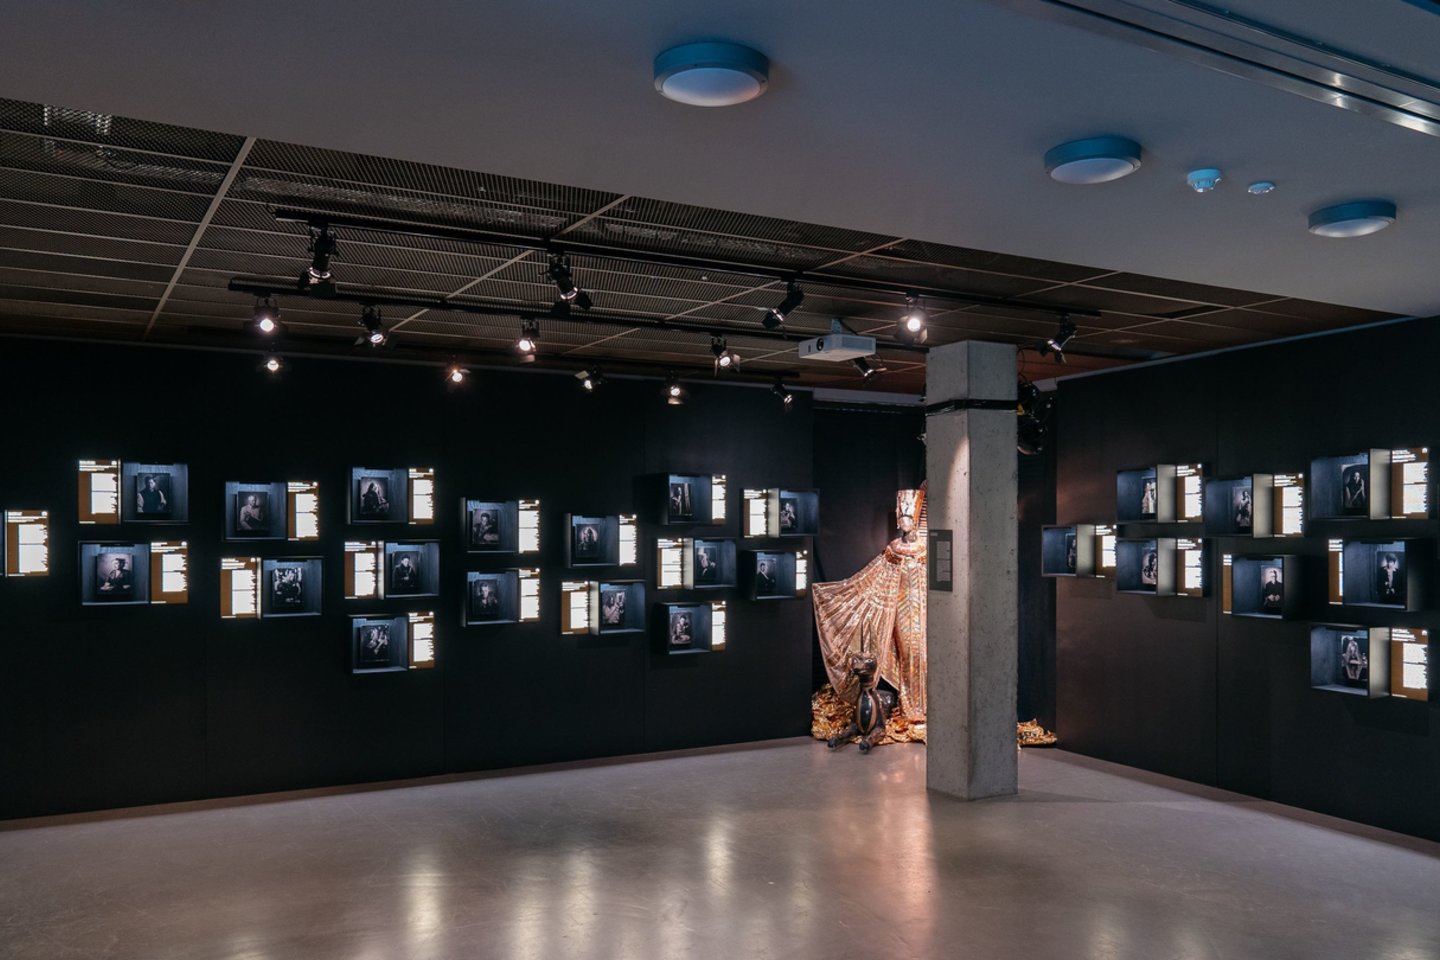 Šiemet klaipėdiečių laukia ypatinga instaliacija – visą vasarą gastrobare eksponuojami MO muziejaus ir Vilnius City Opera (VCO) parodos „Iš tos operos“ fragmentai, kuriuos papildys du unikalūs renginiai.